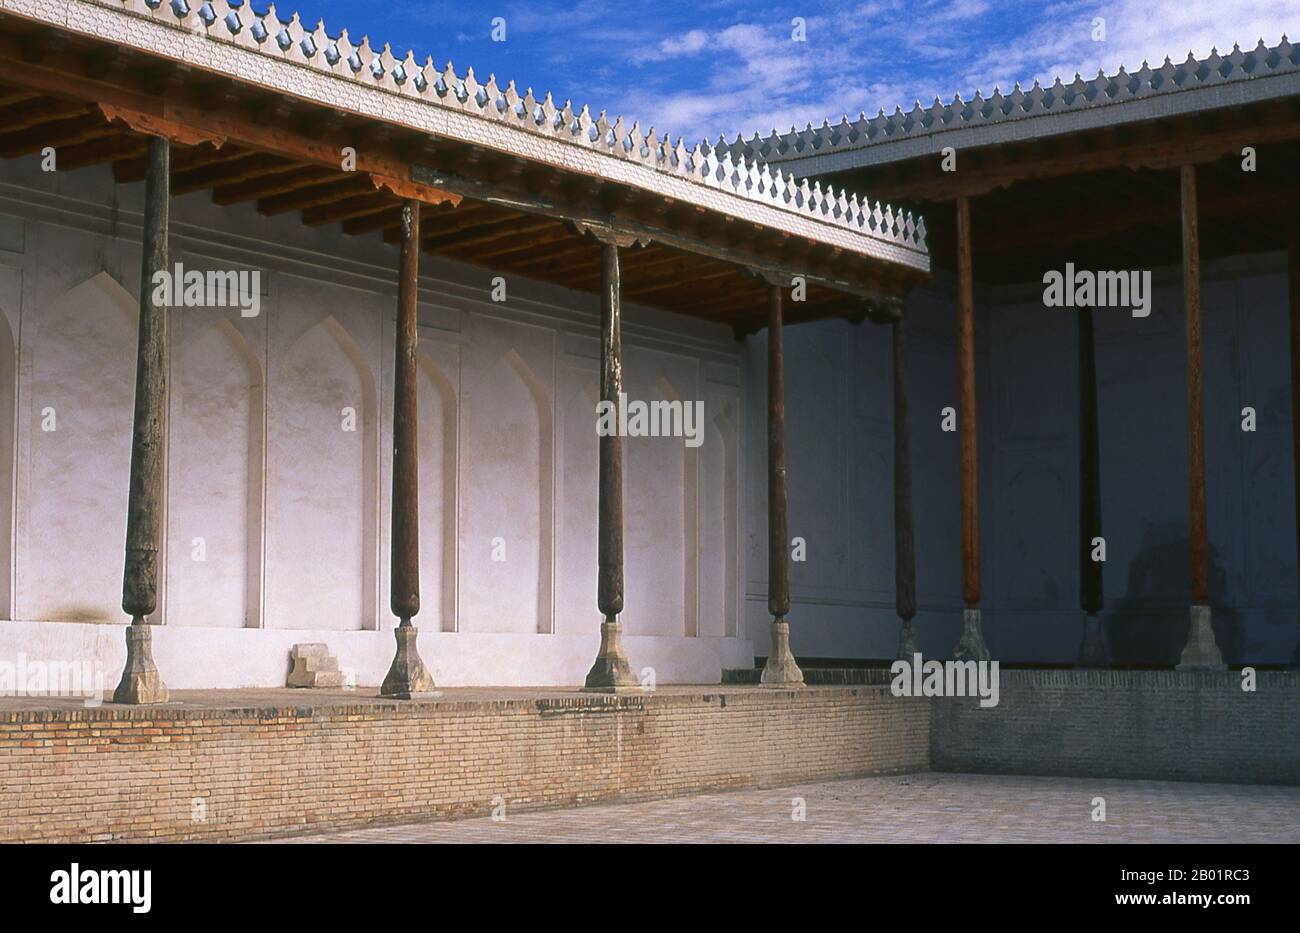 Uzbekistan: Cortile della Jama Masjid (Moschea del venerdì) all'interno della fortezza dell'Arca, Bukhara. L'Arca fu inizialmente costruita e occupata intorno al V secolo. Oltre ad essere una struttura militare, l'Arca comprendeva quella che era essenzialmente una città che, durante gran parte della storia della fortezza, era abitata dalle varie corti reali che dominavano la regione circostante Bukhara. L'Arca fu usata come fortezza fino alla caduta in mano alla Russia nel 1920. Bukhara fu fondata nel 500 a.C. nell'area ora chiamata Arca. Tuttavia, l'oasi di Bukhara era stata abitata molto tempo prima. Foto Stock